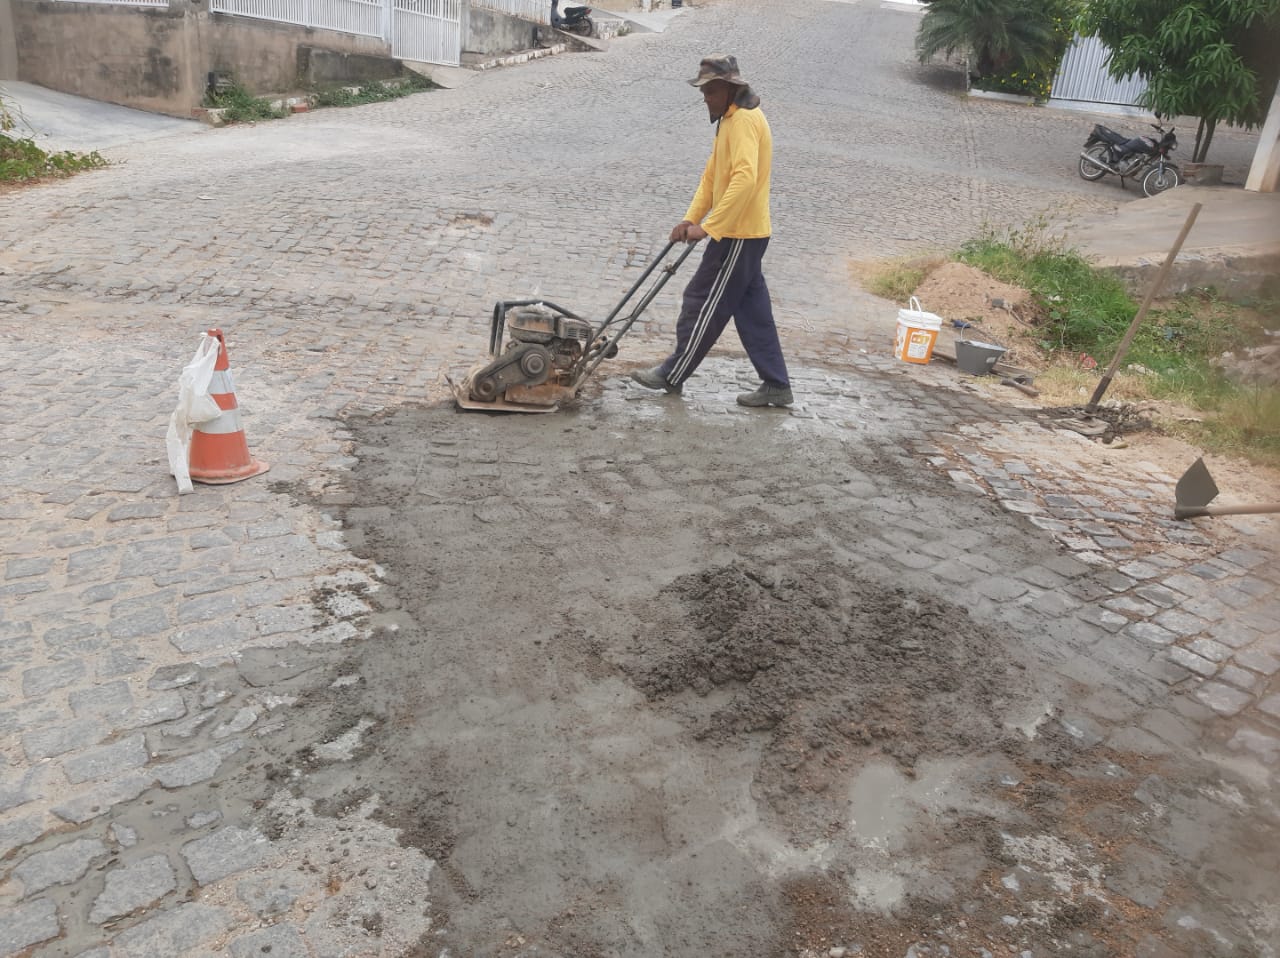 PREFEITURA de Antônio Martins realiza serviços de tapa-buracos e limpeza urbana em diversos pontos da cidade